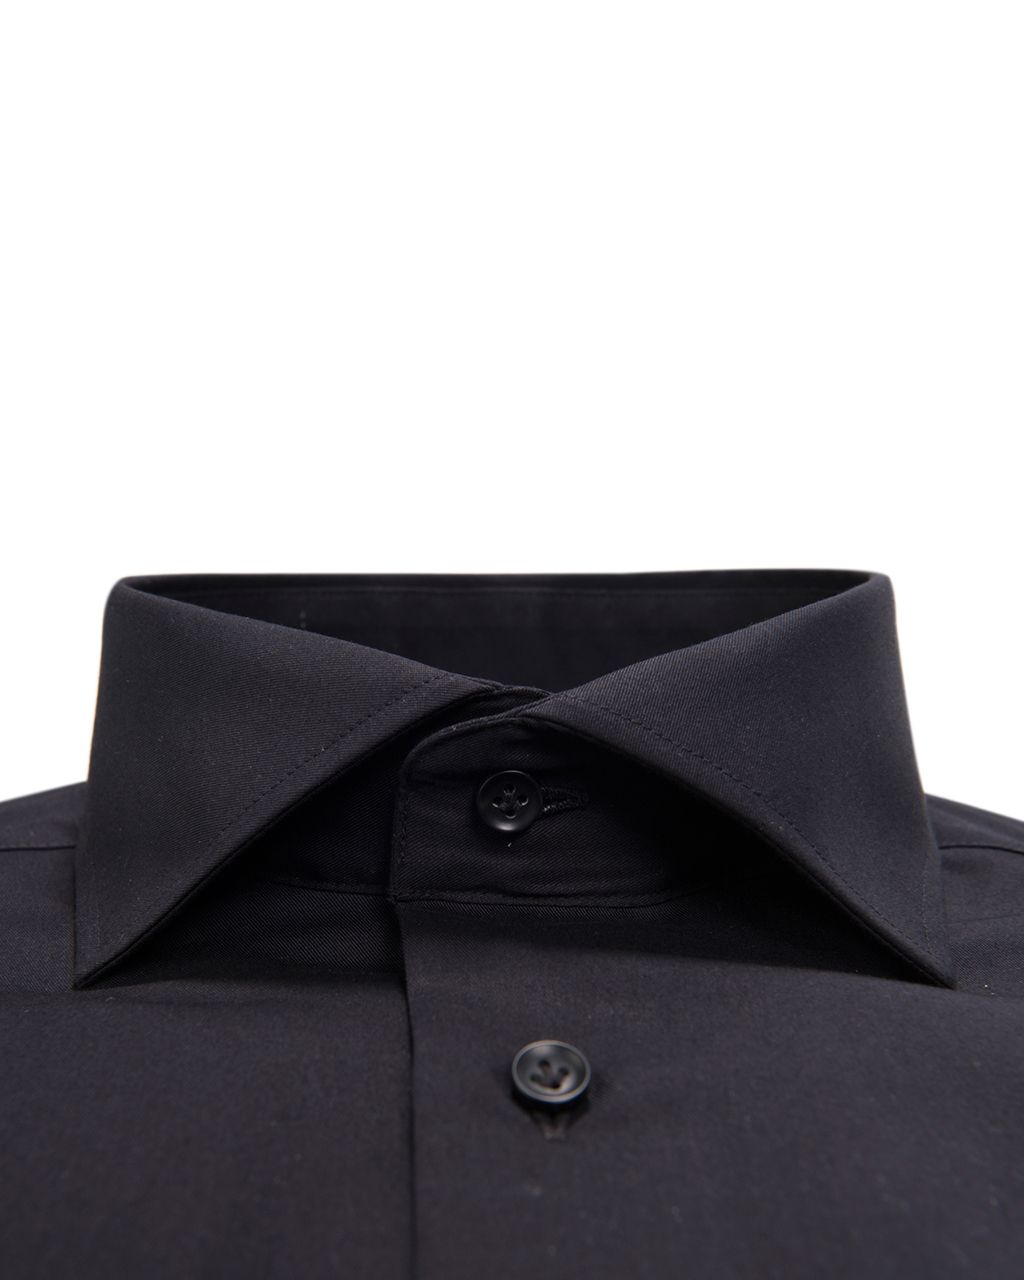 Profuomo Originale Slim fit Overhemd LM Zwart 002303-10-37